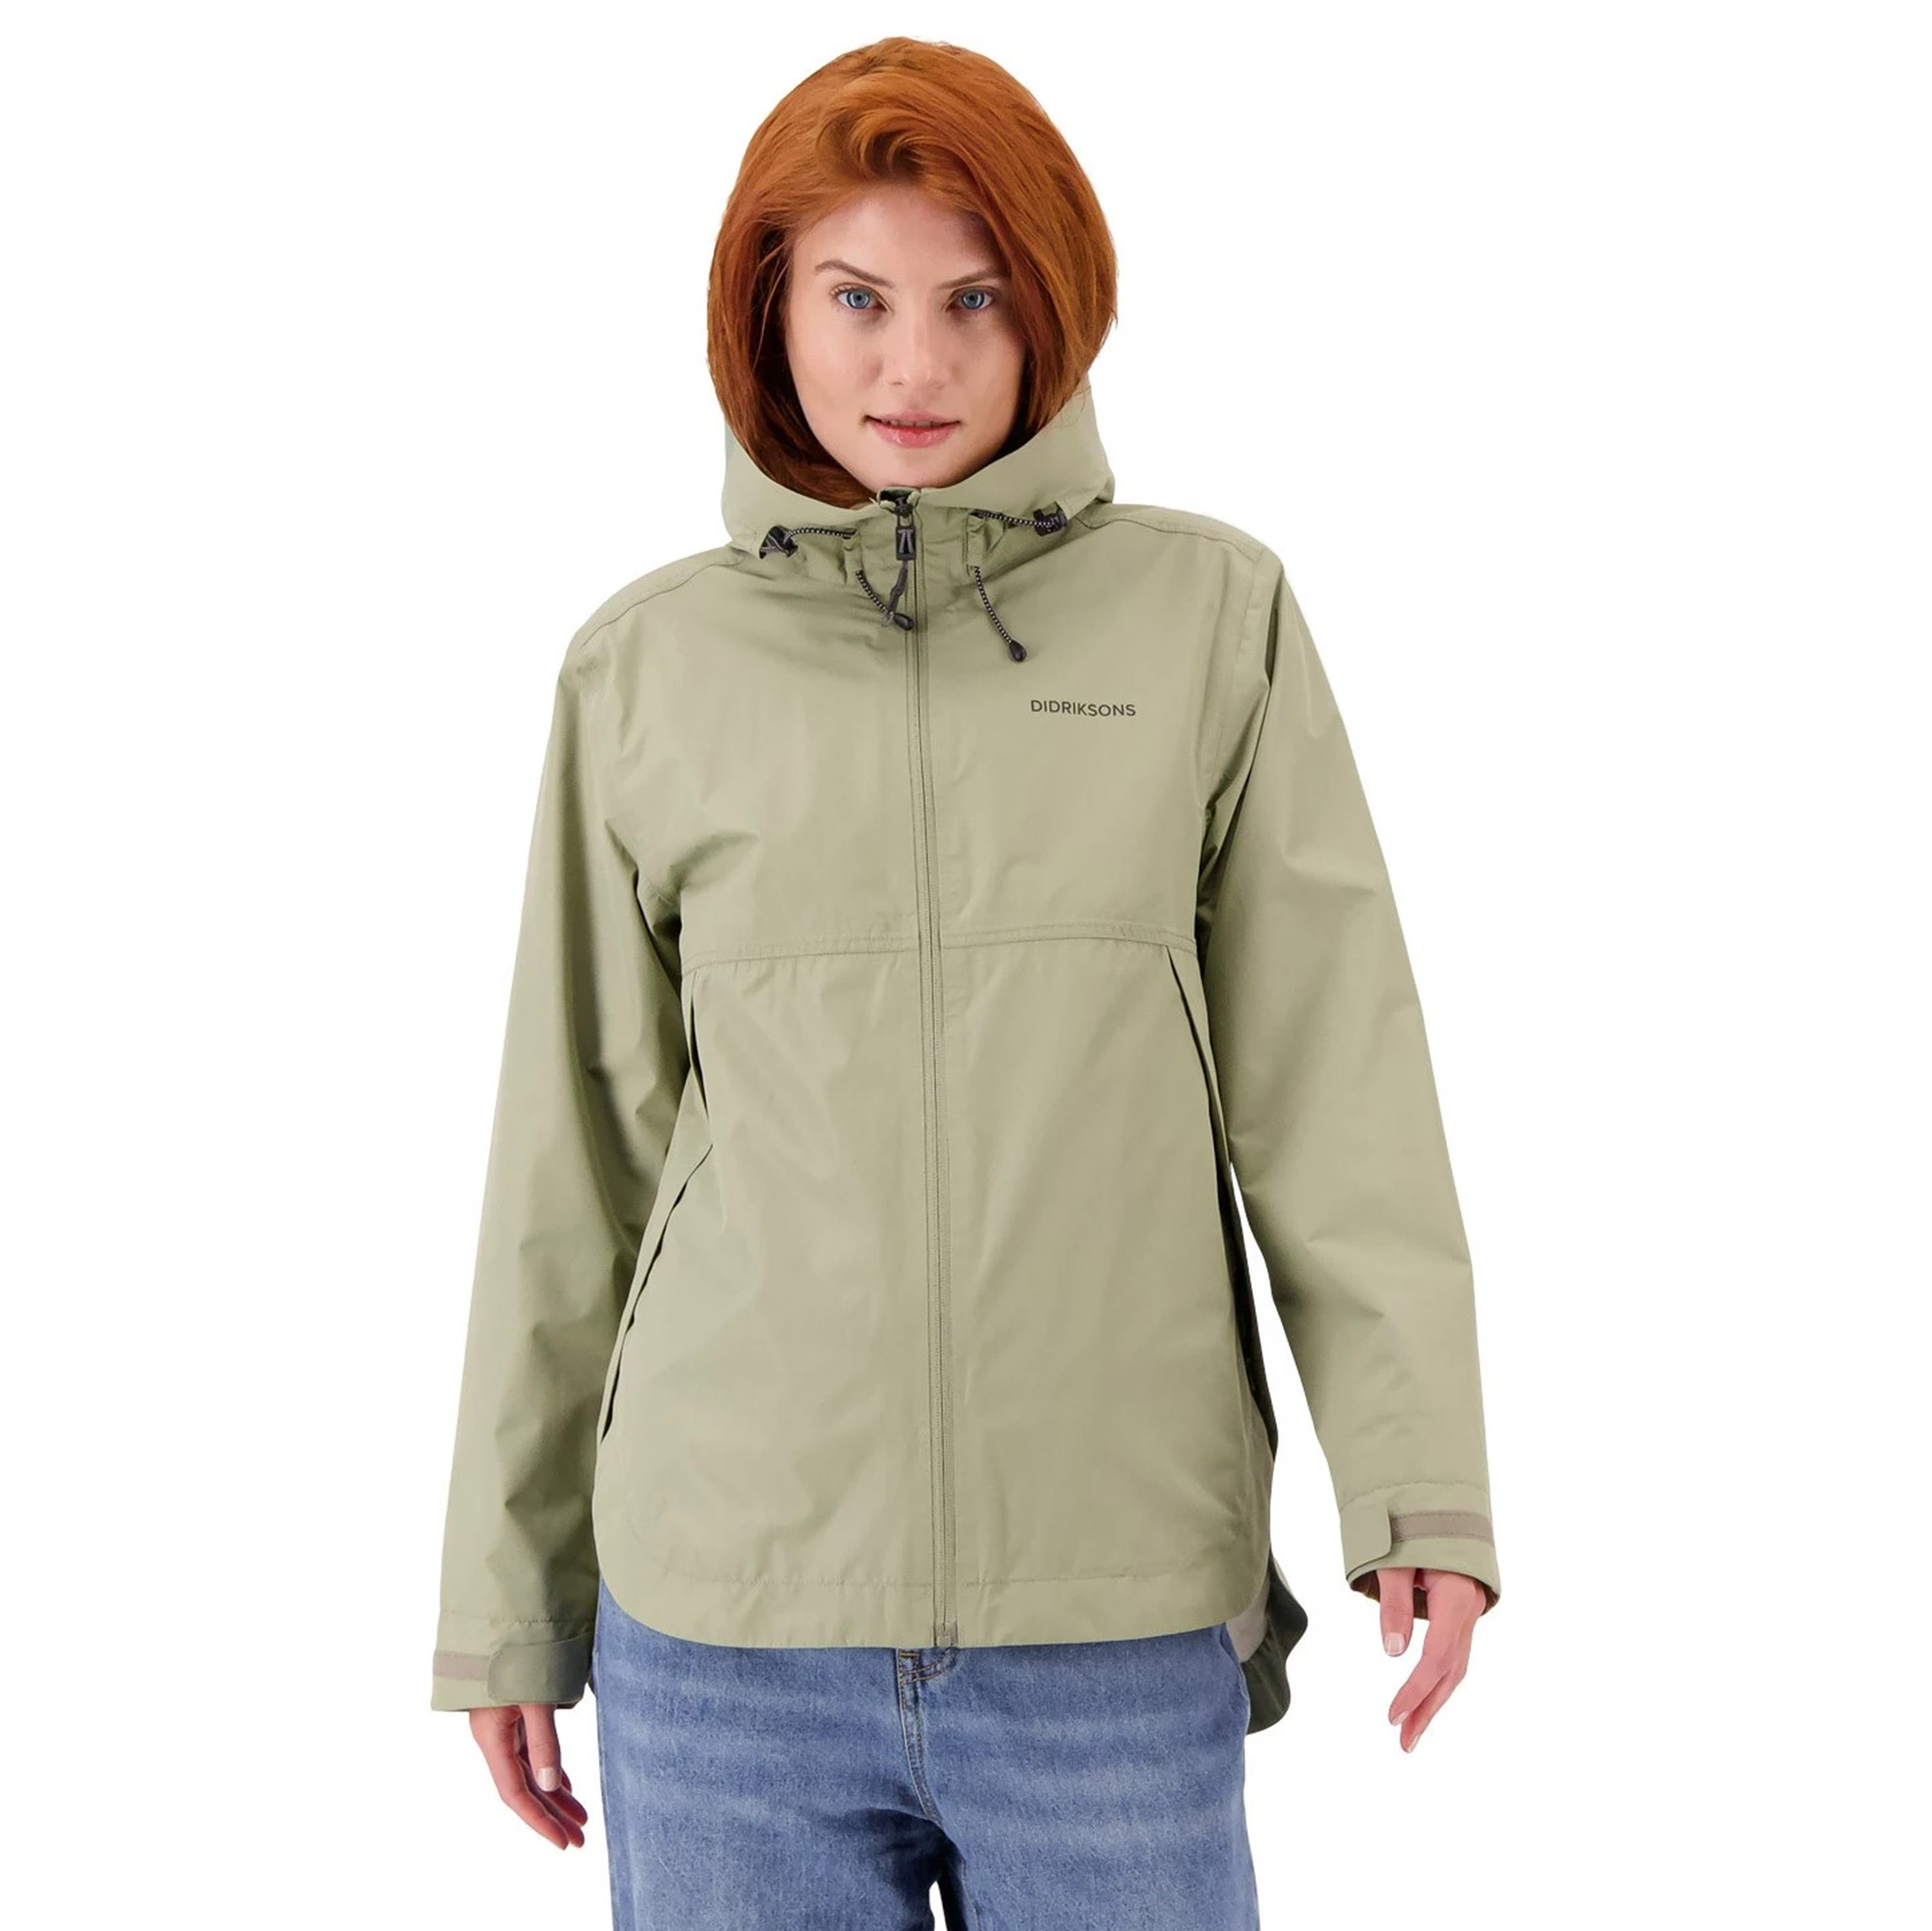 Didriksons Tilde Women's Waterproof Jacket